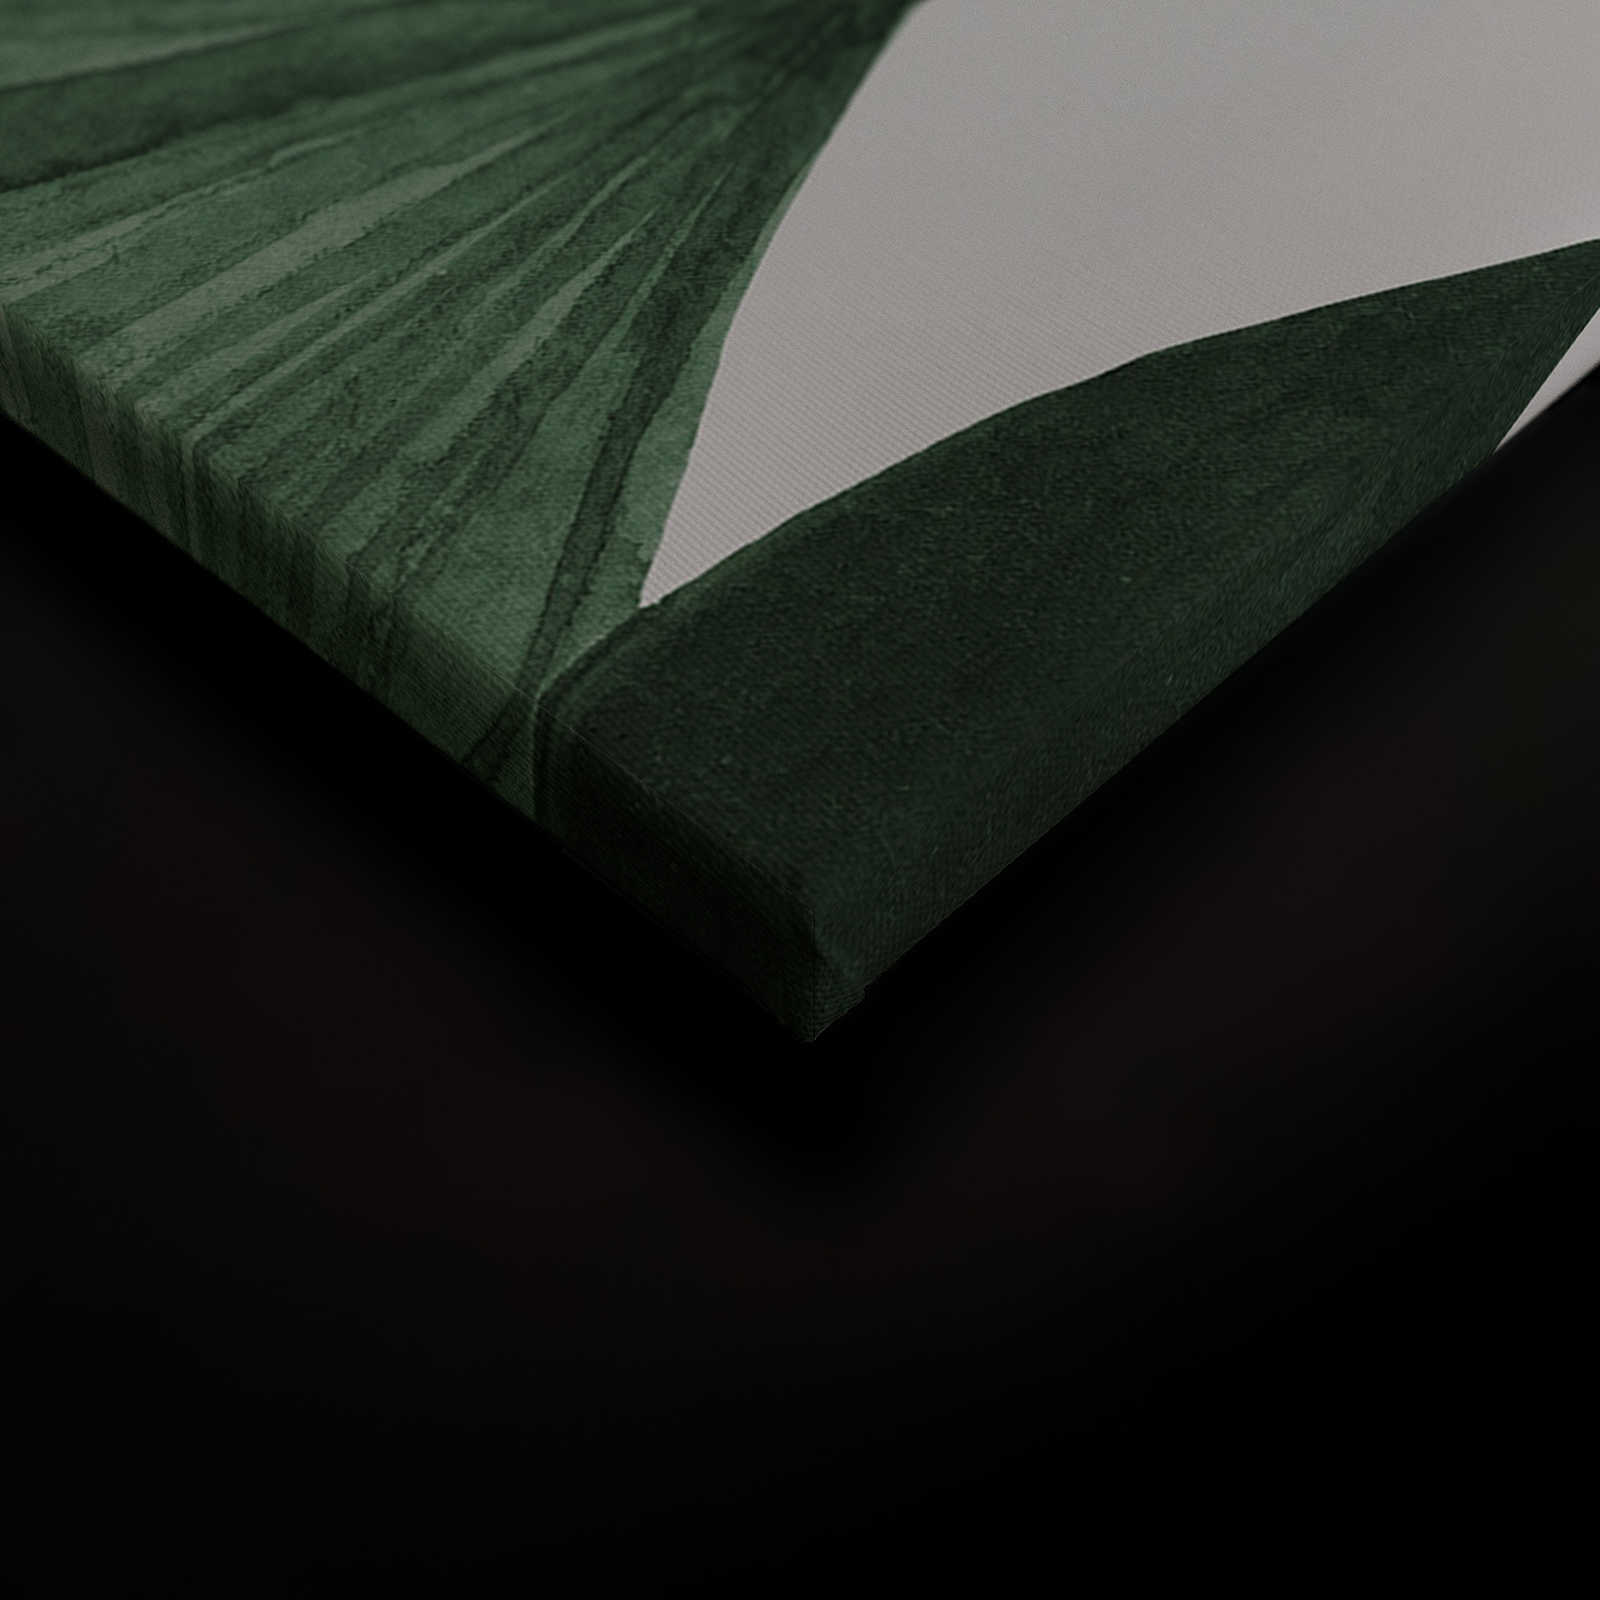             Leinwandbild mit großen Blättern einer Strahlenpalme – 0,90 m x 0,60 m
        